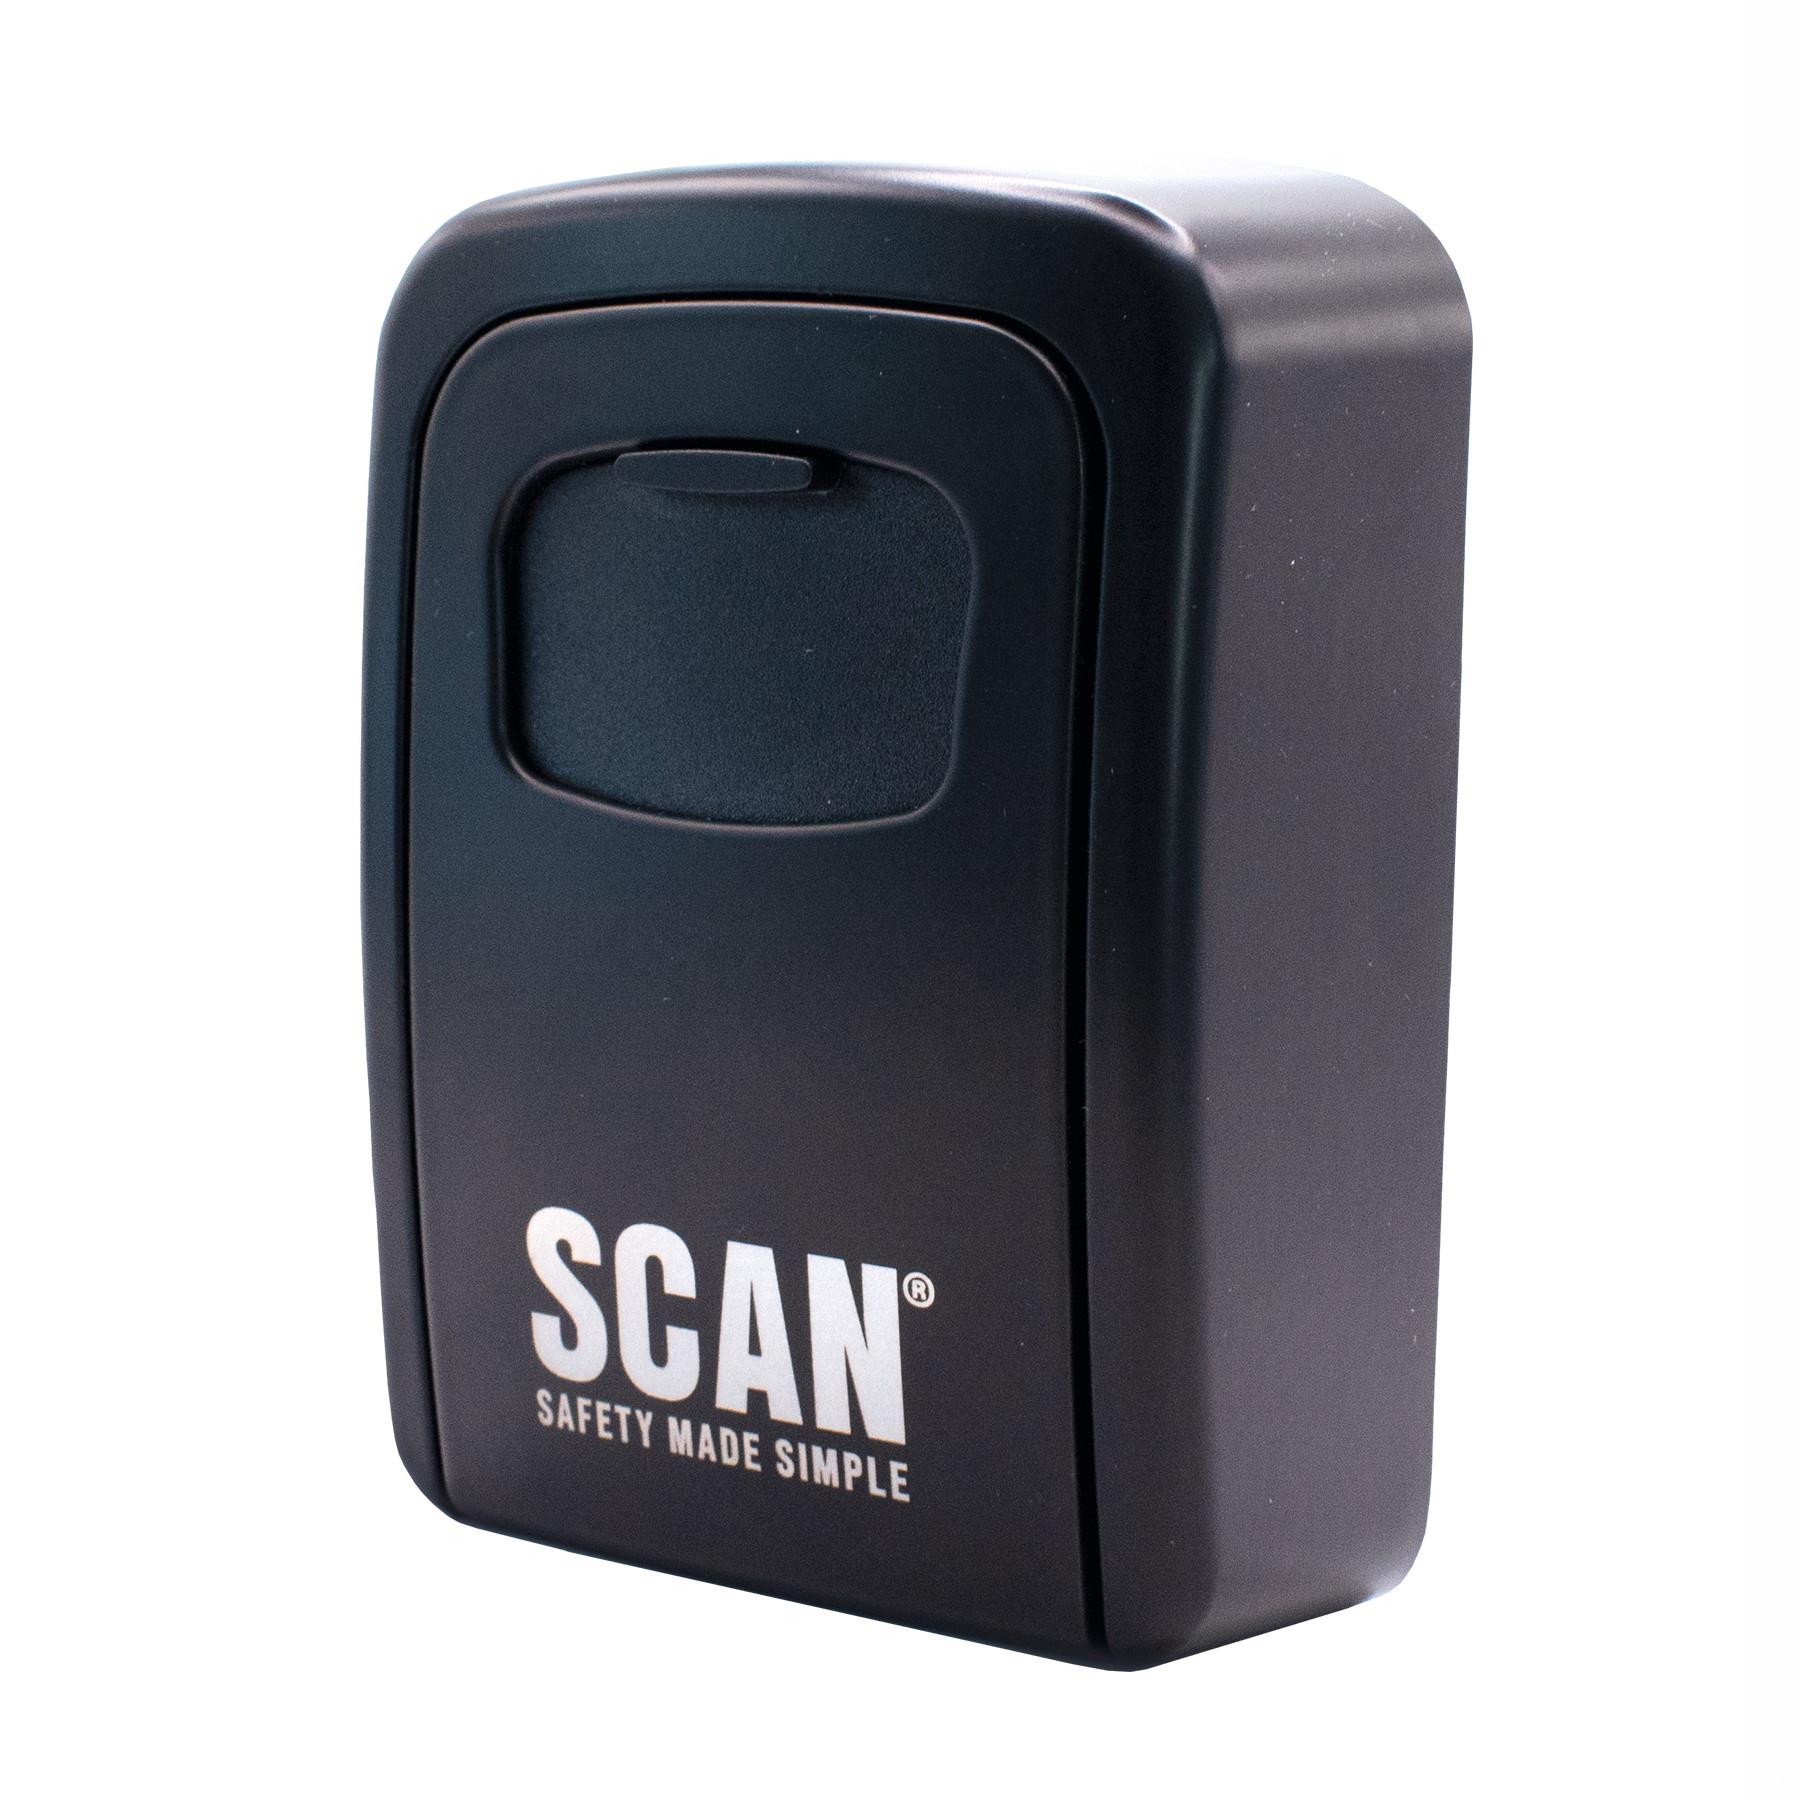 Scan Security Key Safe